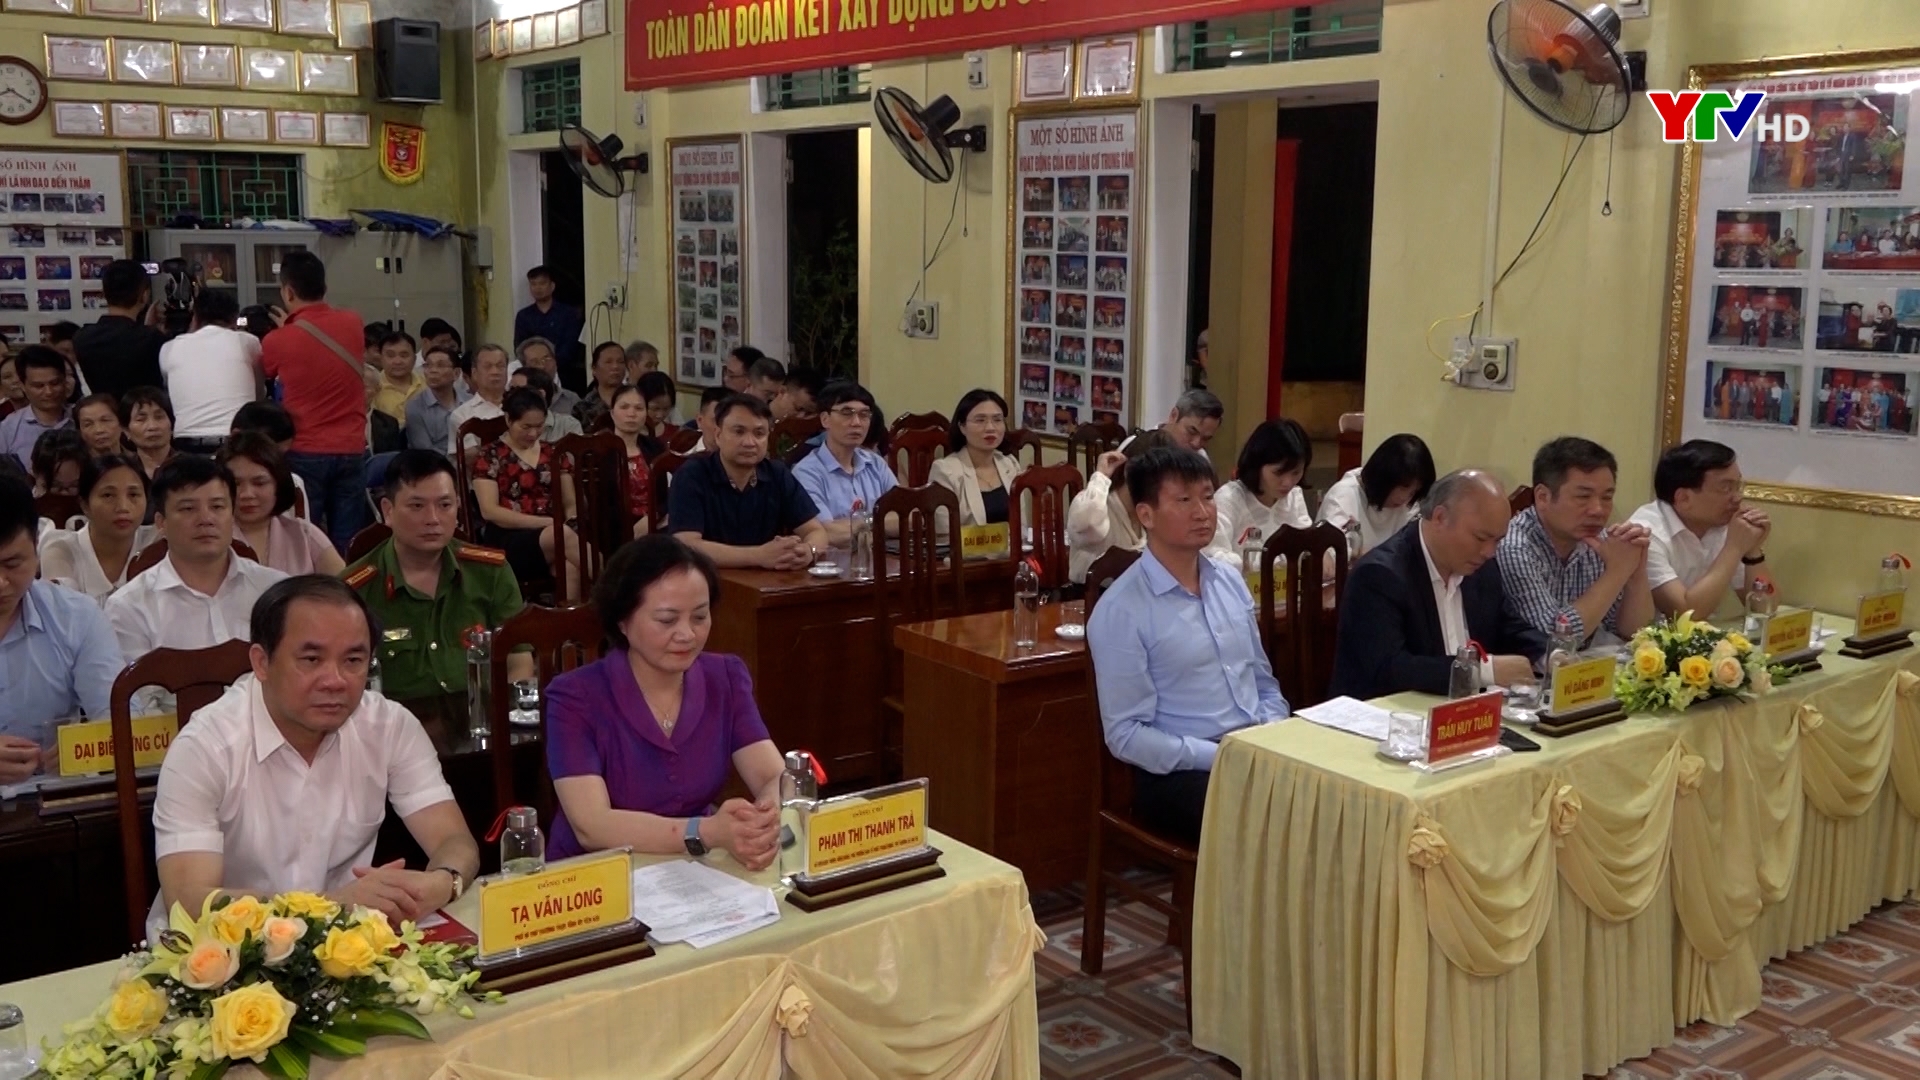 UB MTTQ phường Đồng Tâm tổ chức Hội nghị lấy ý kiến nhận xét và tín nhiệm của cử tri đối với người ứng cử ĐBQH khóa XV và ĐBHĐND các cấp